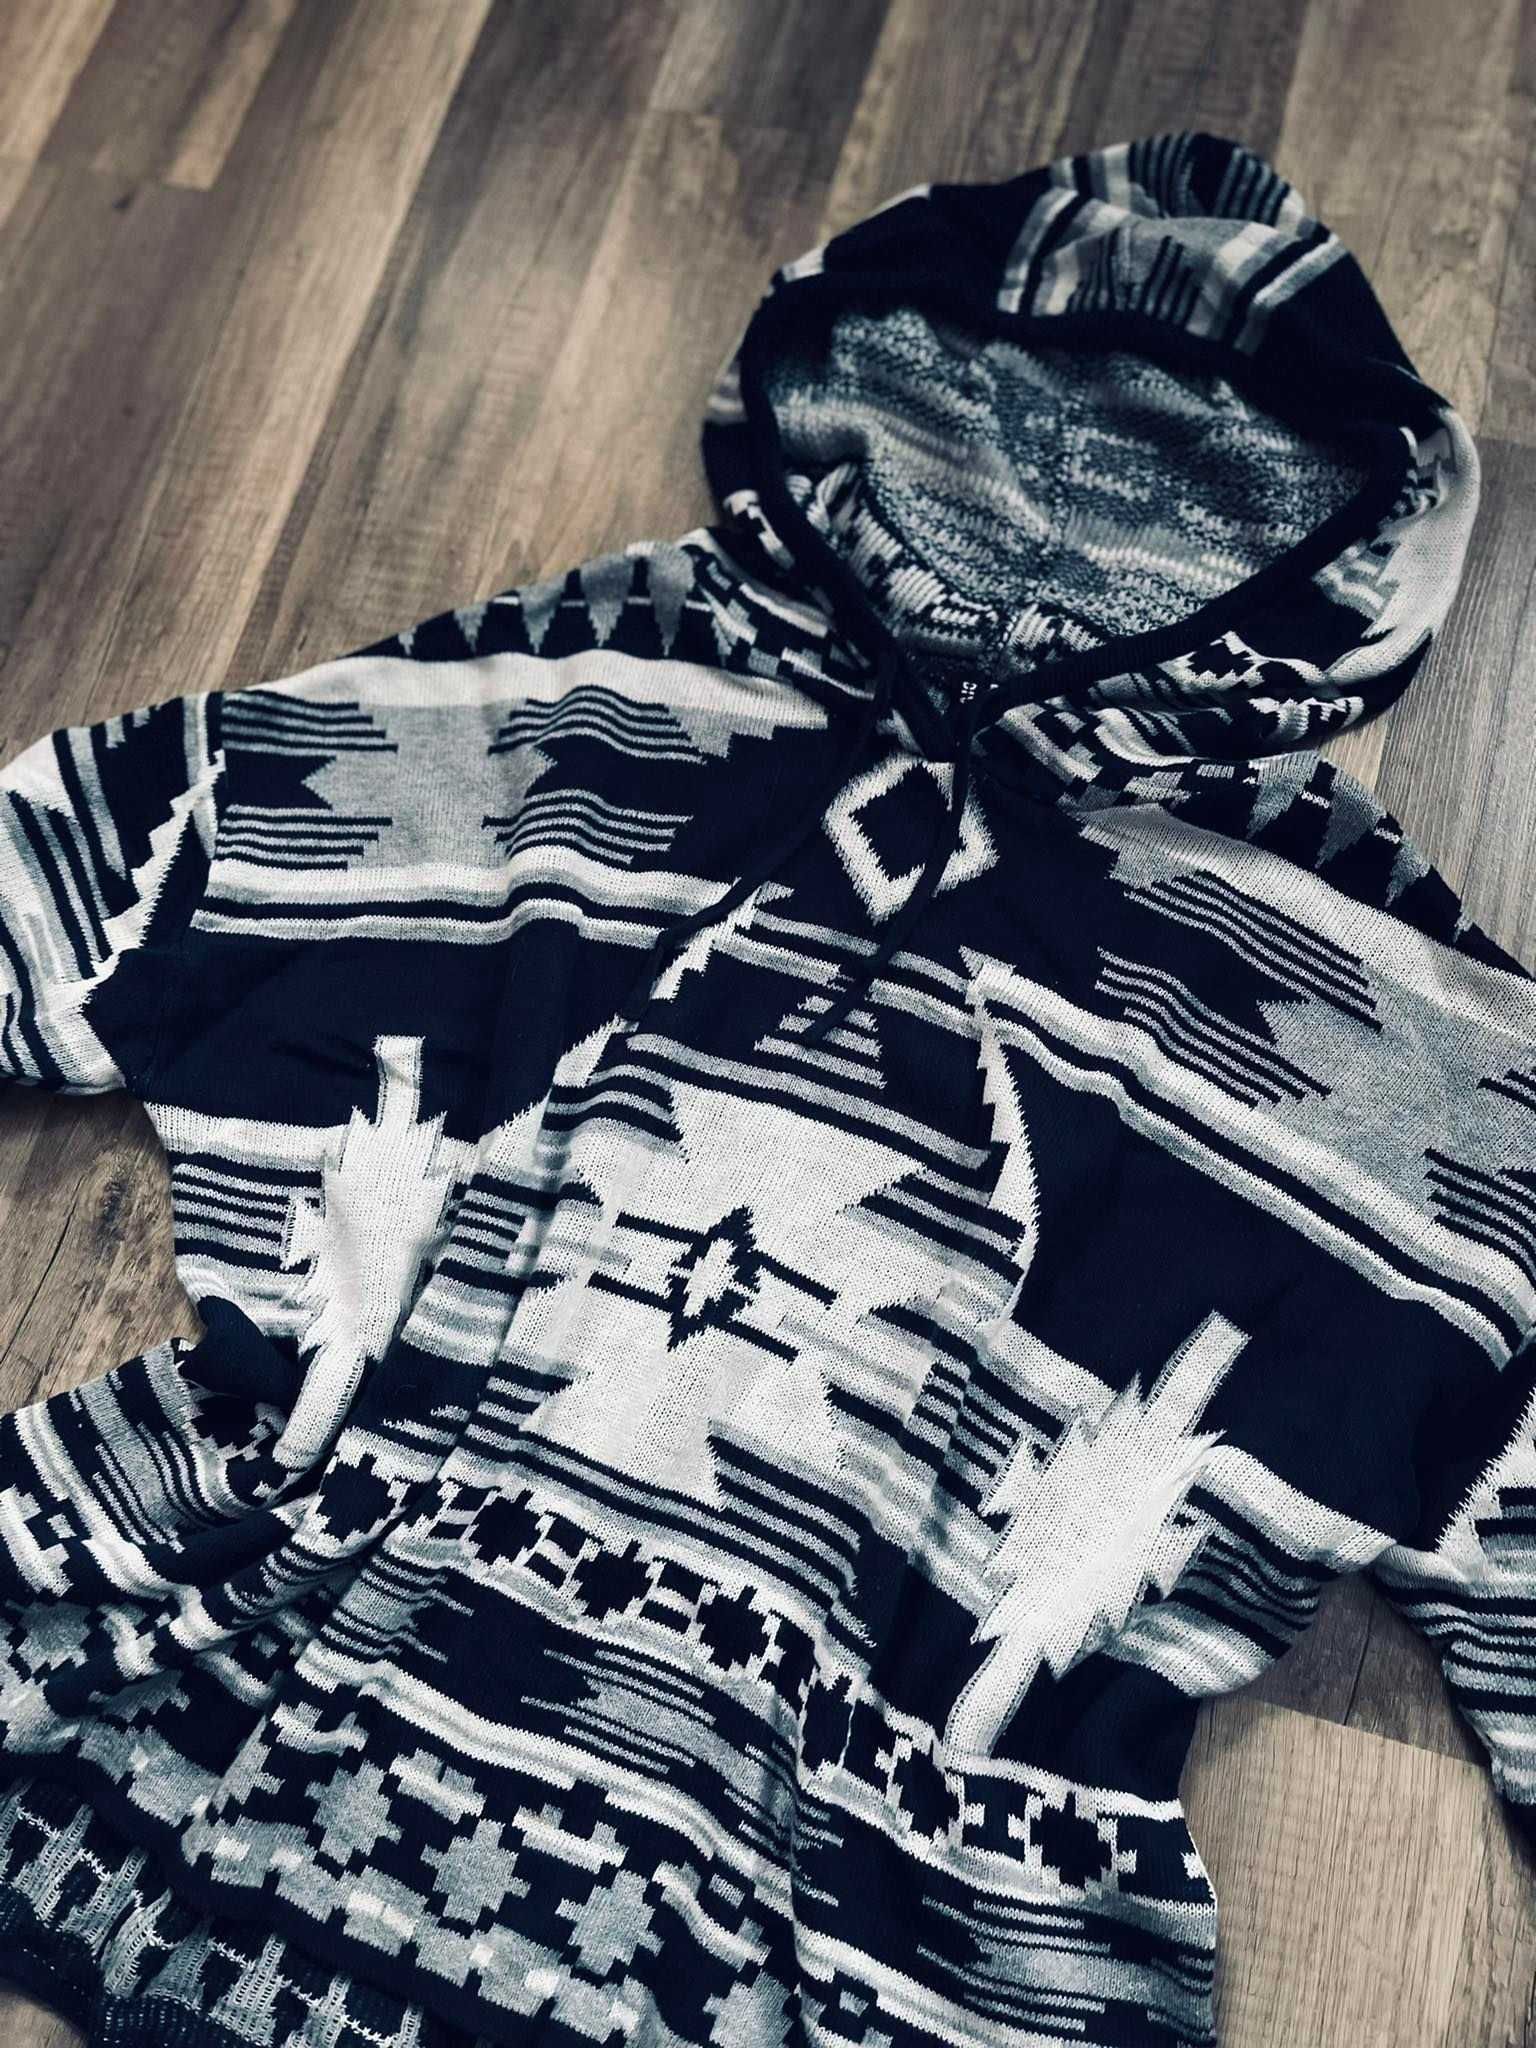 Festiwalowa bluza w aztecki wzór 36/S. Sweter.